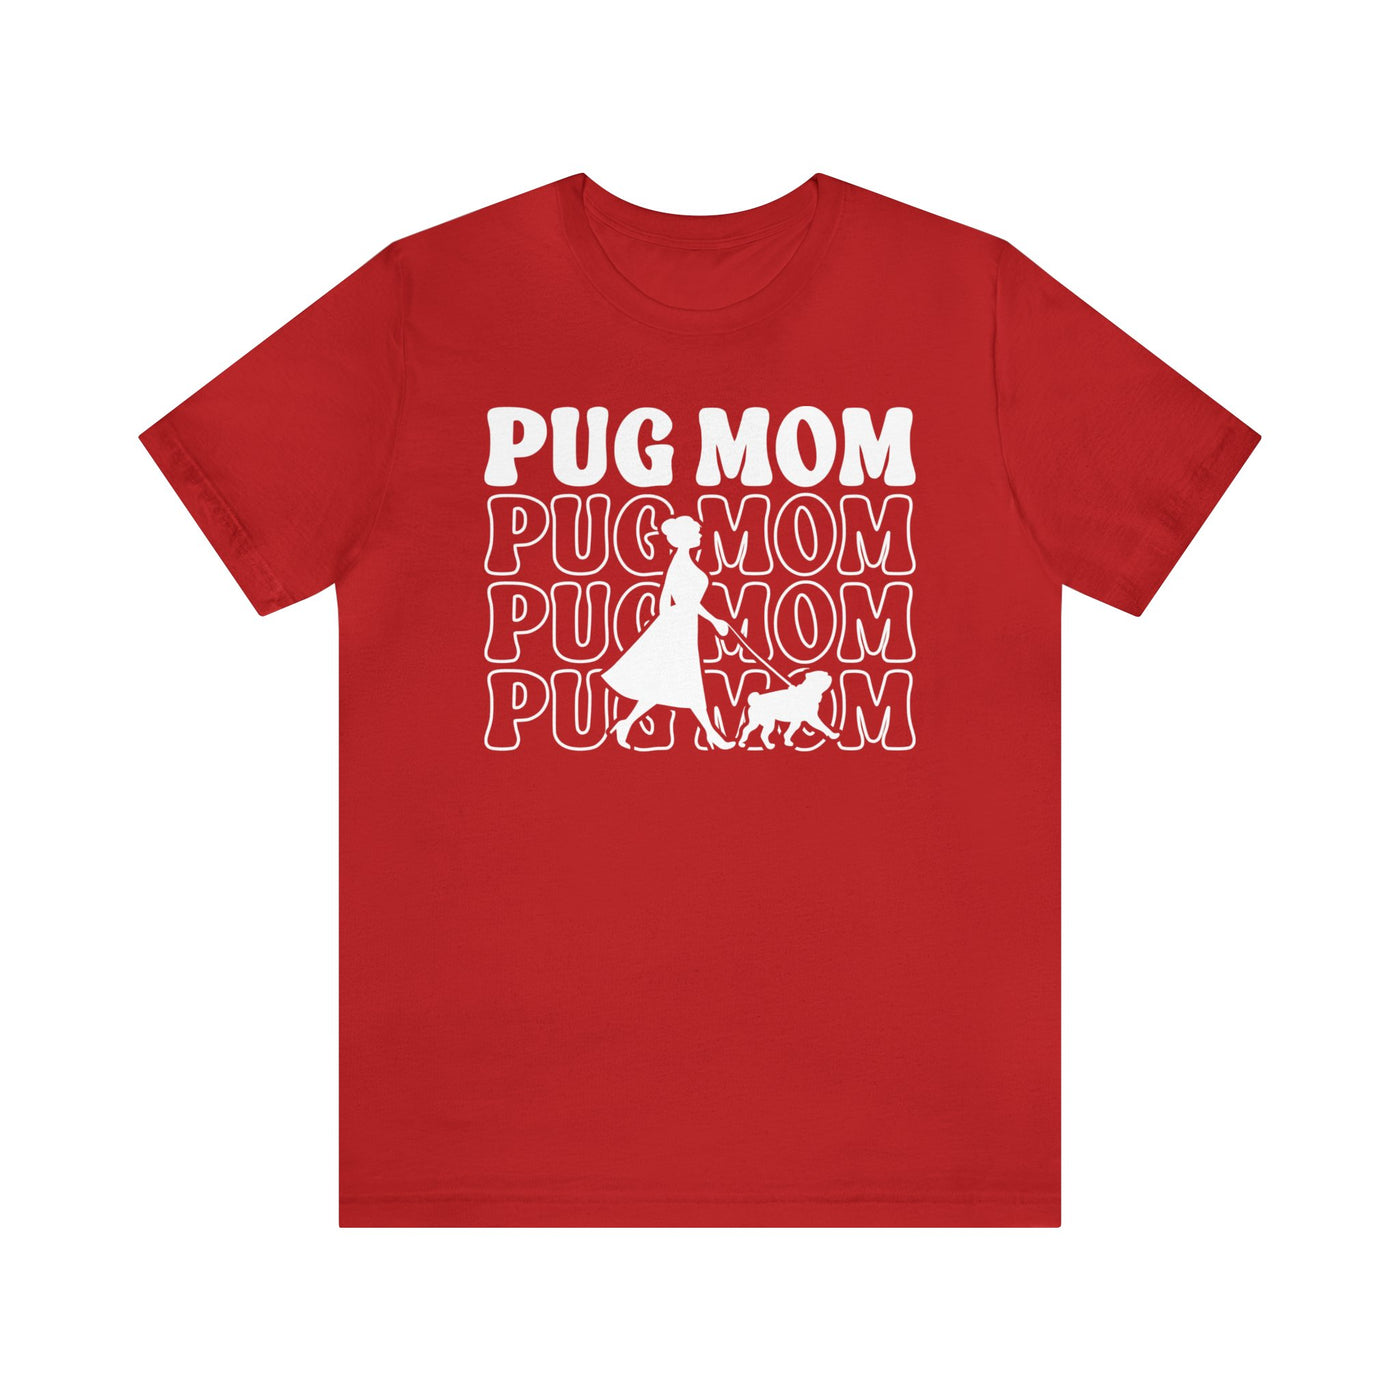 Pug Mom Walking T-Shirt